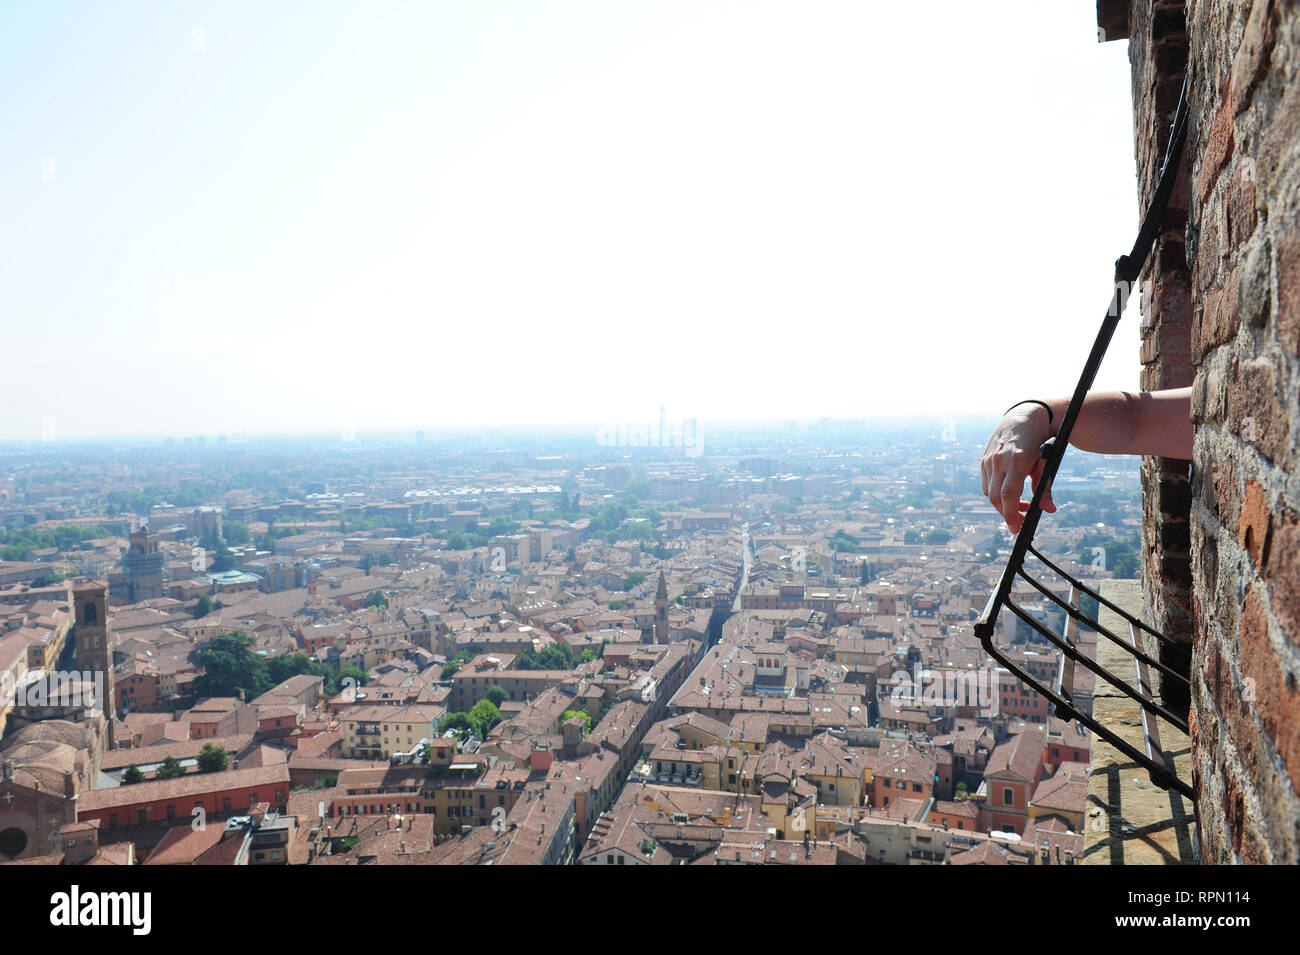 Dettaglio di un uomo del braccio appoggiato su una delle finestre sulla sommità della torre degli Asinelli a Bologna, Italia Foto Stock